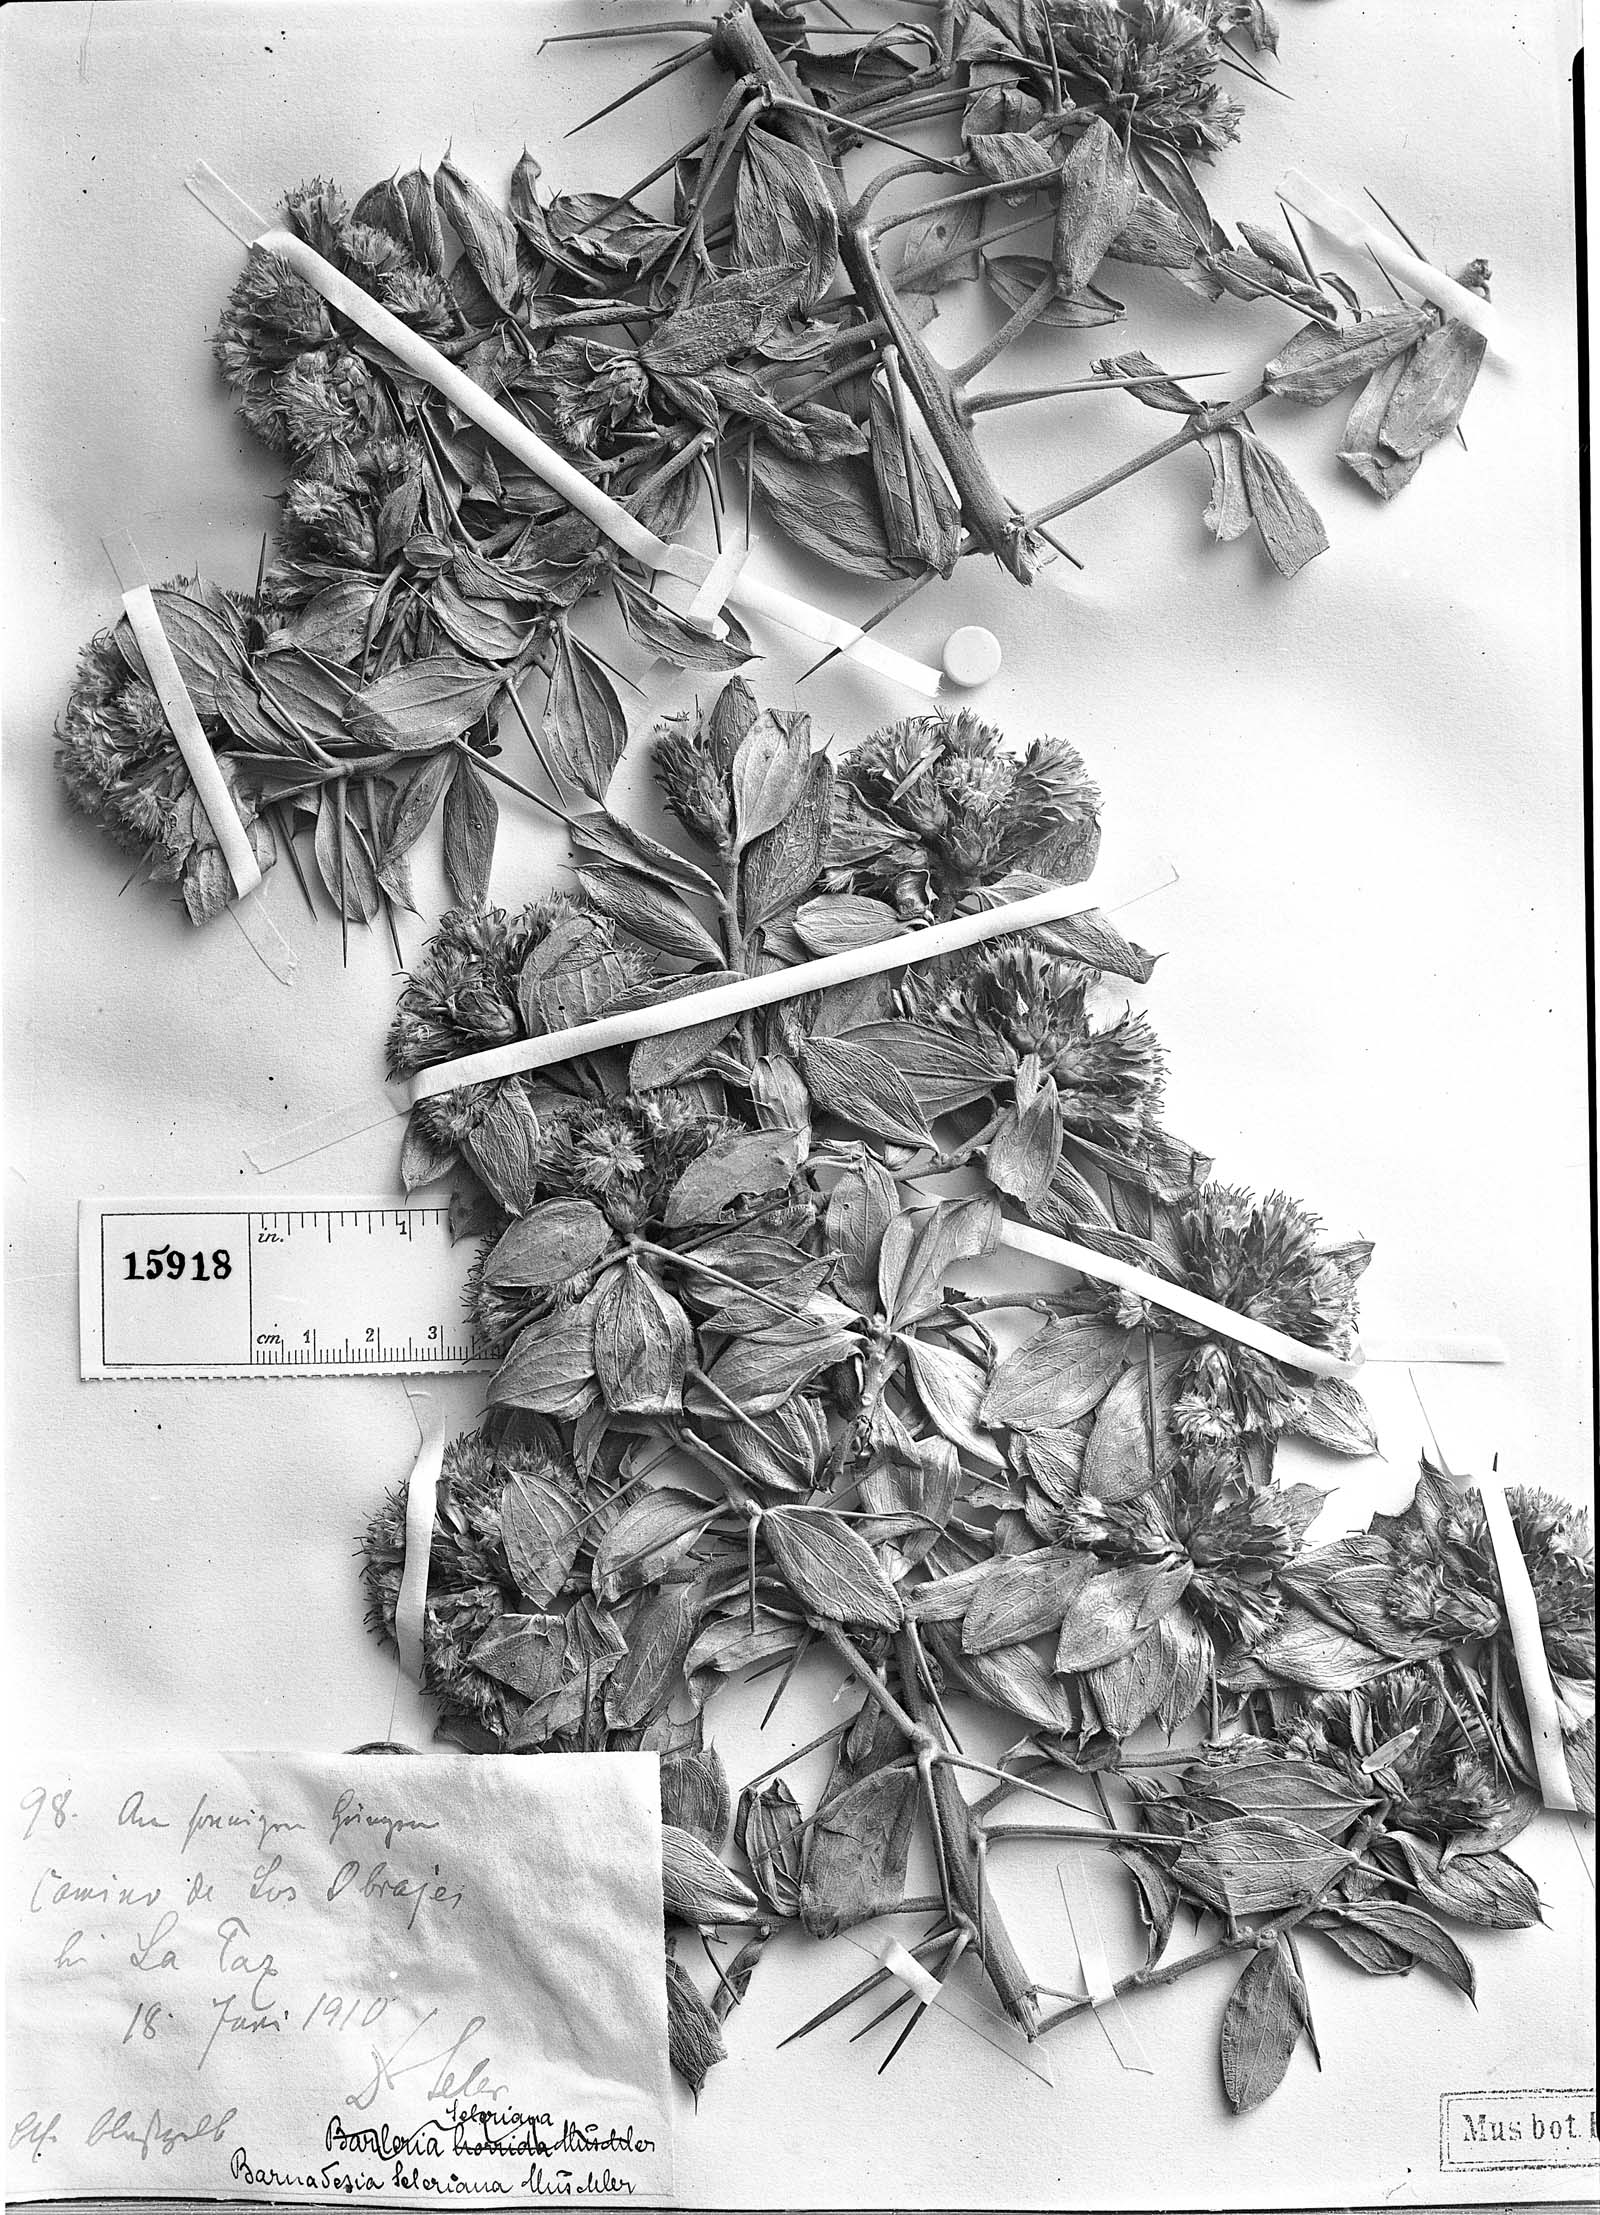 Dasyphyllum ferox image